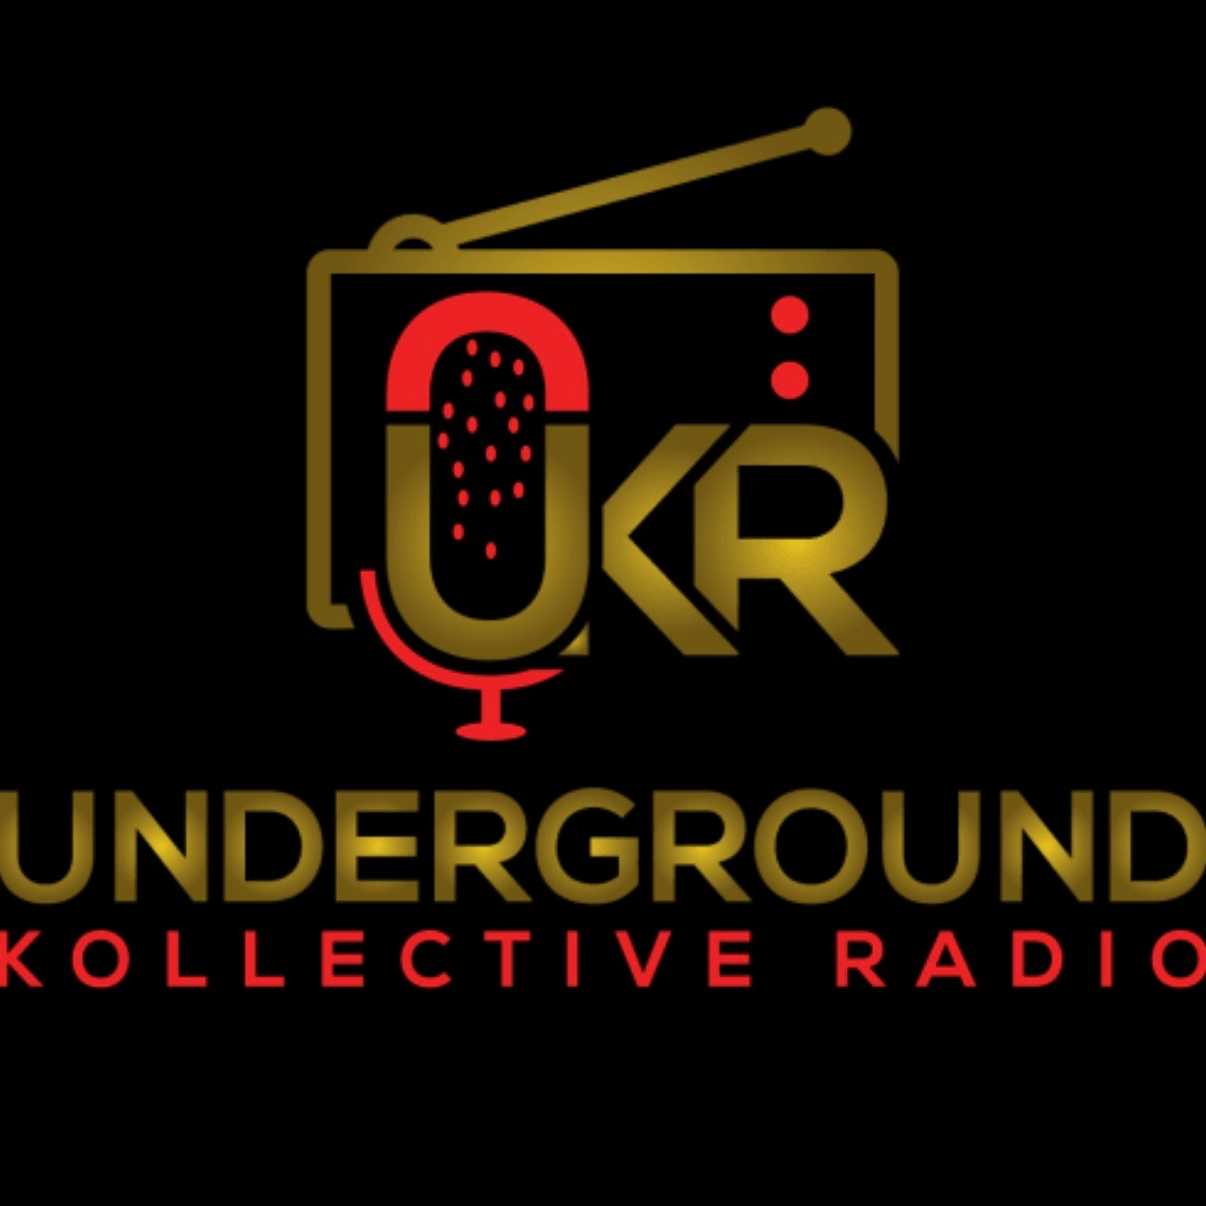 Underground Kollective Radio